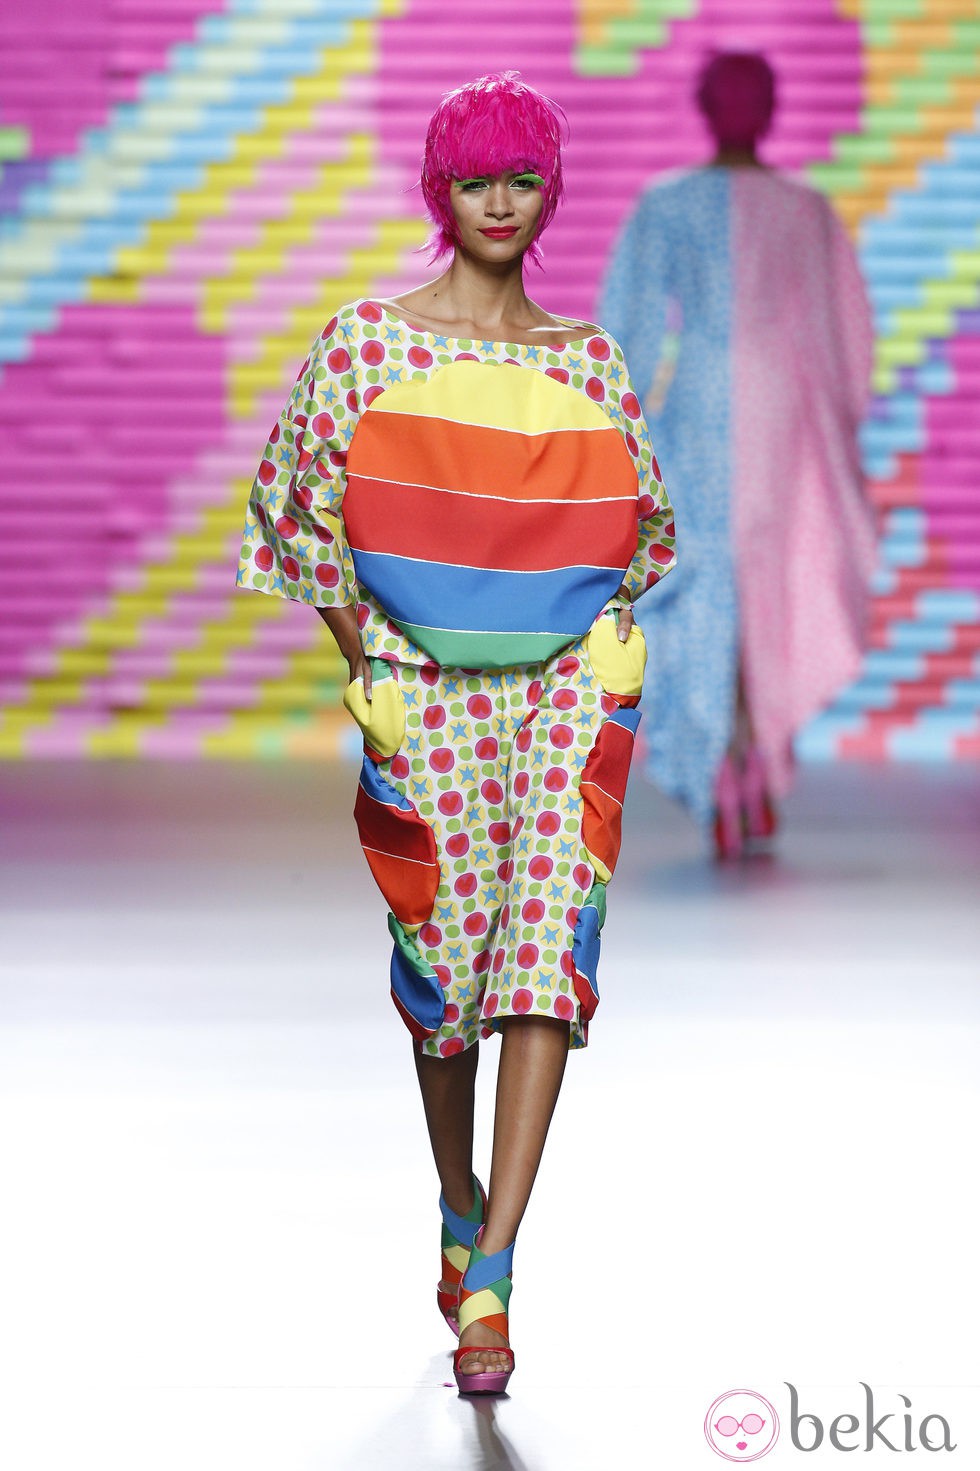 Vestido de arcoíris de Ágatha Ruiz de la Prada en Madrid Fashion Week primavera/verano 2015